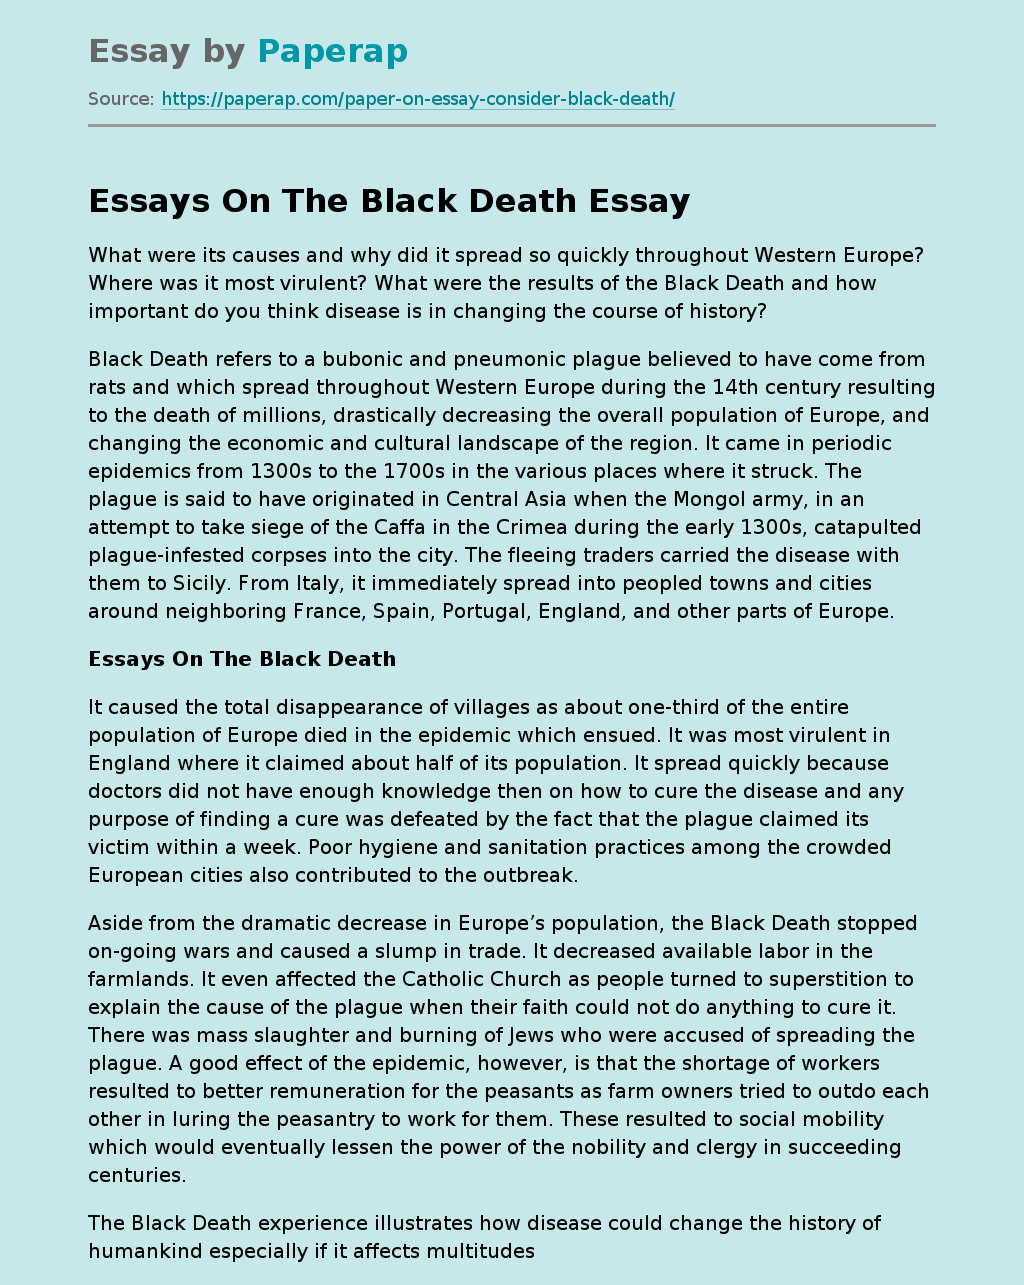 Essays On The Black Death